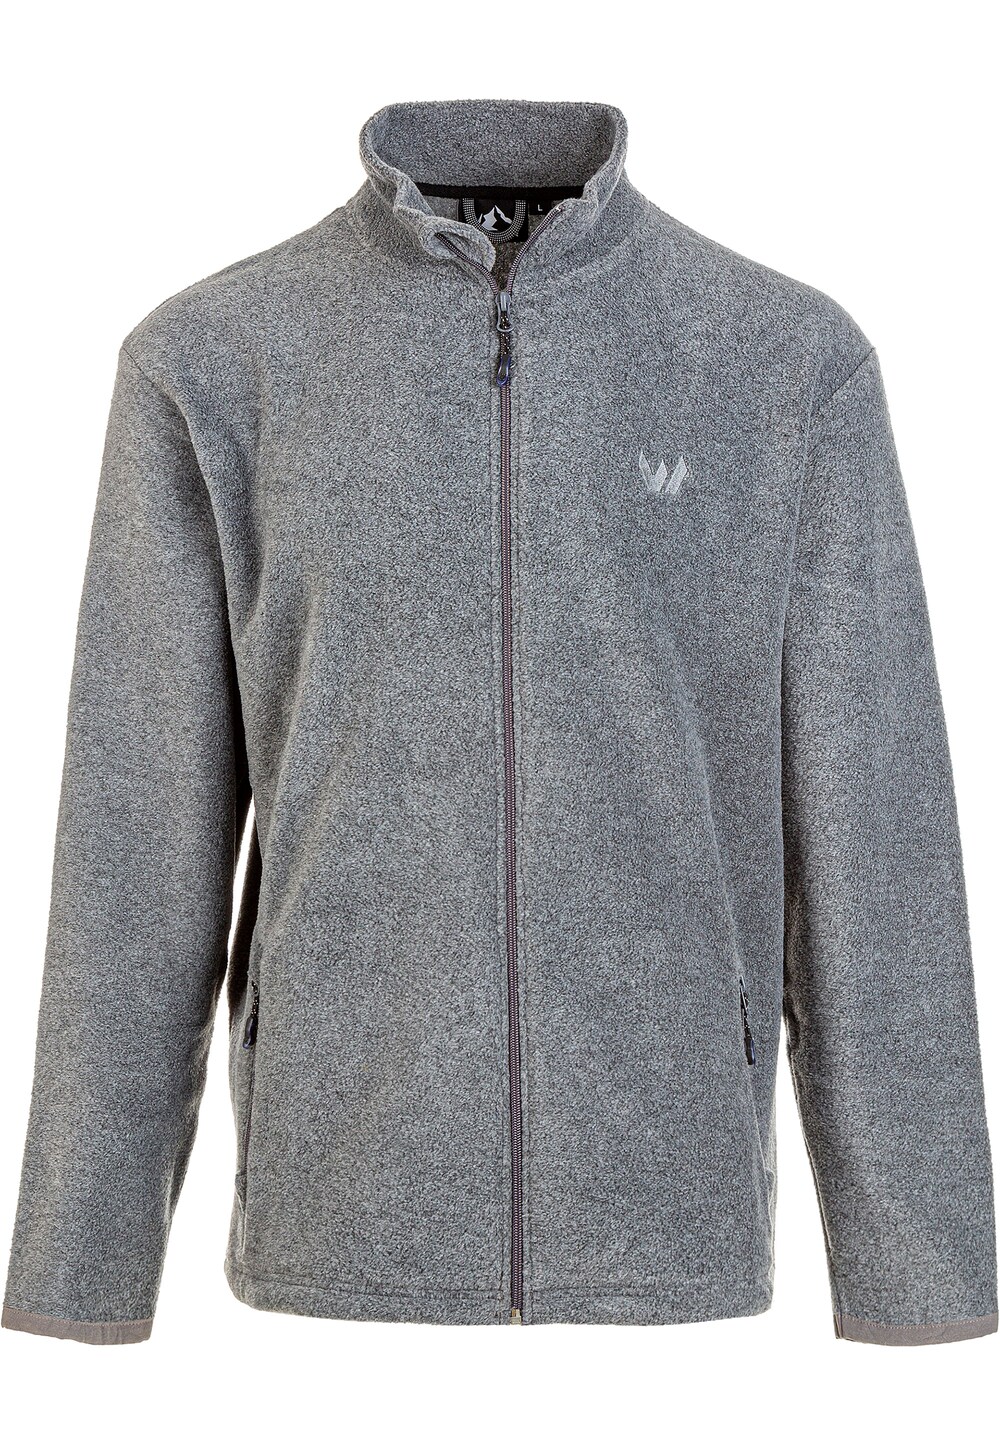 Спортивная флисовая куртка Whistler Cocoon, пестрый серый цена и фото